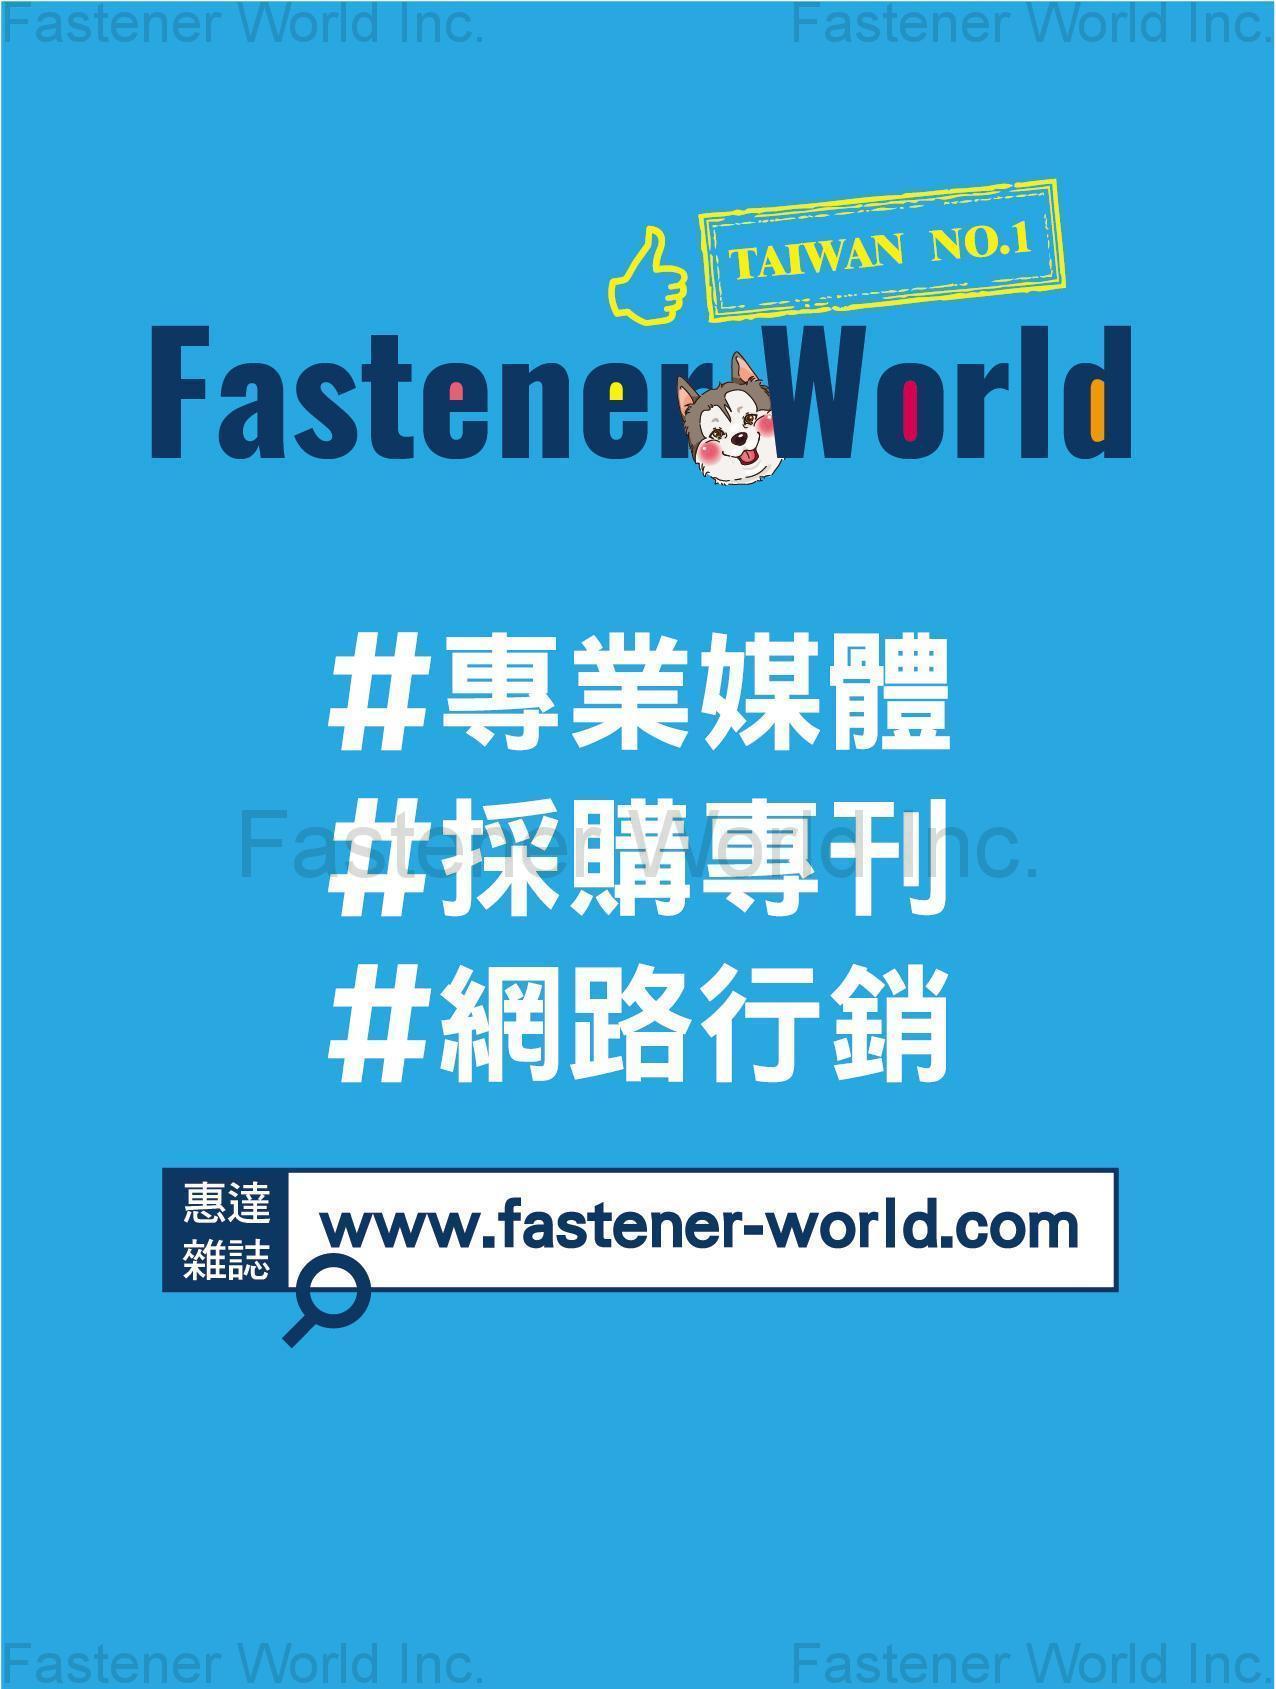 匯達實業有限公司 , Fastener World #專業媒體 #採購專刊 #網路行銷